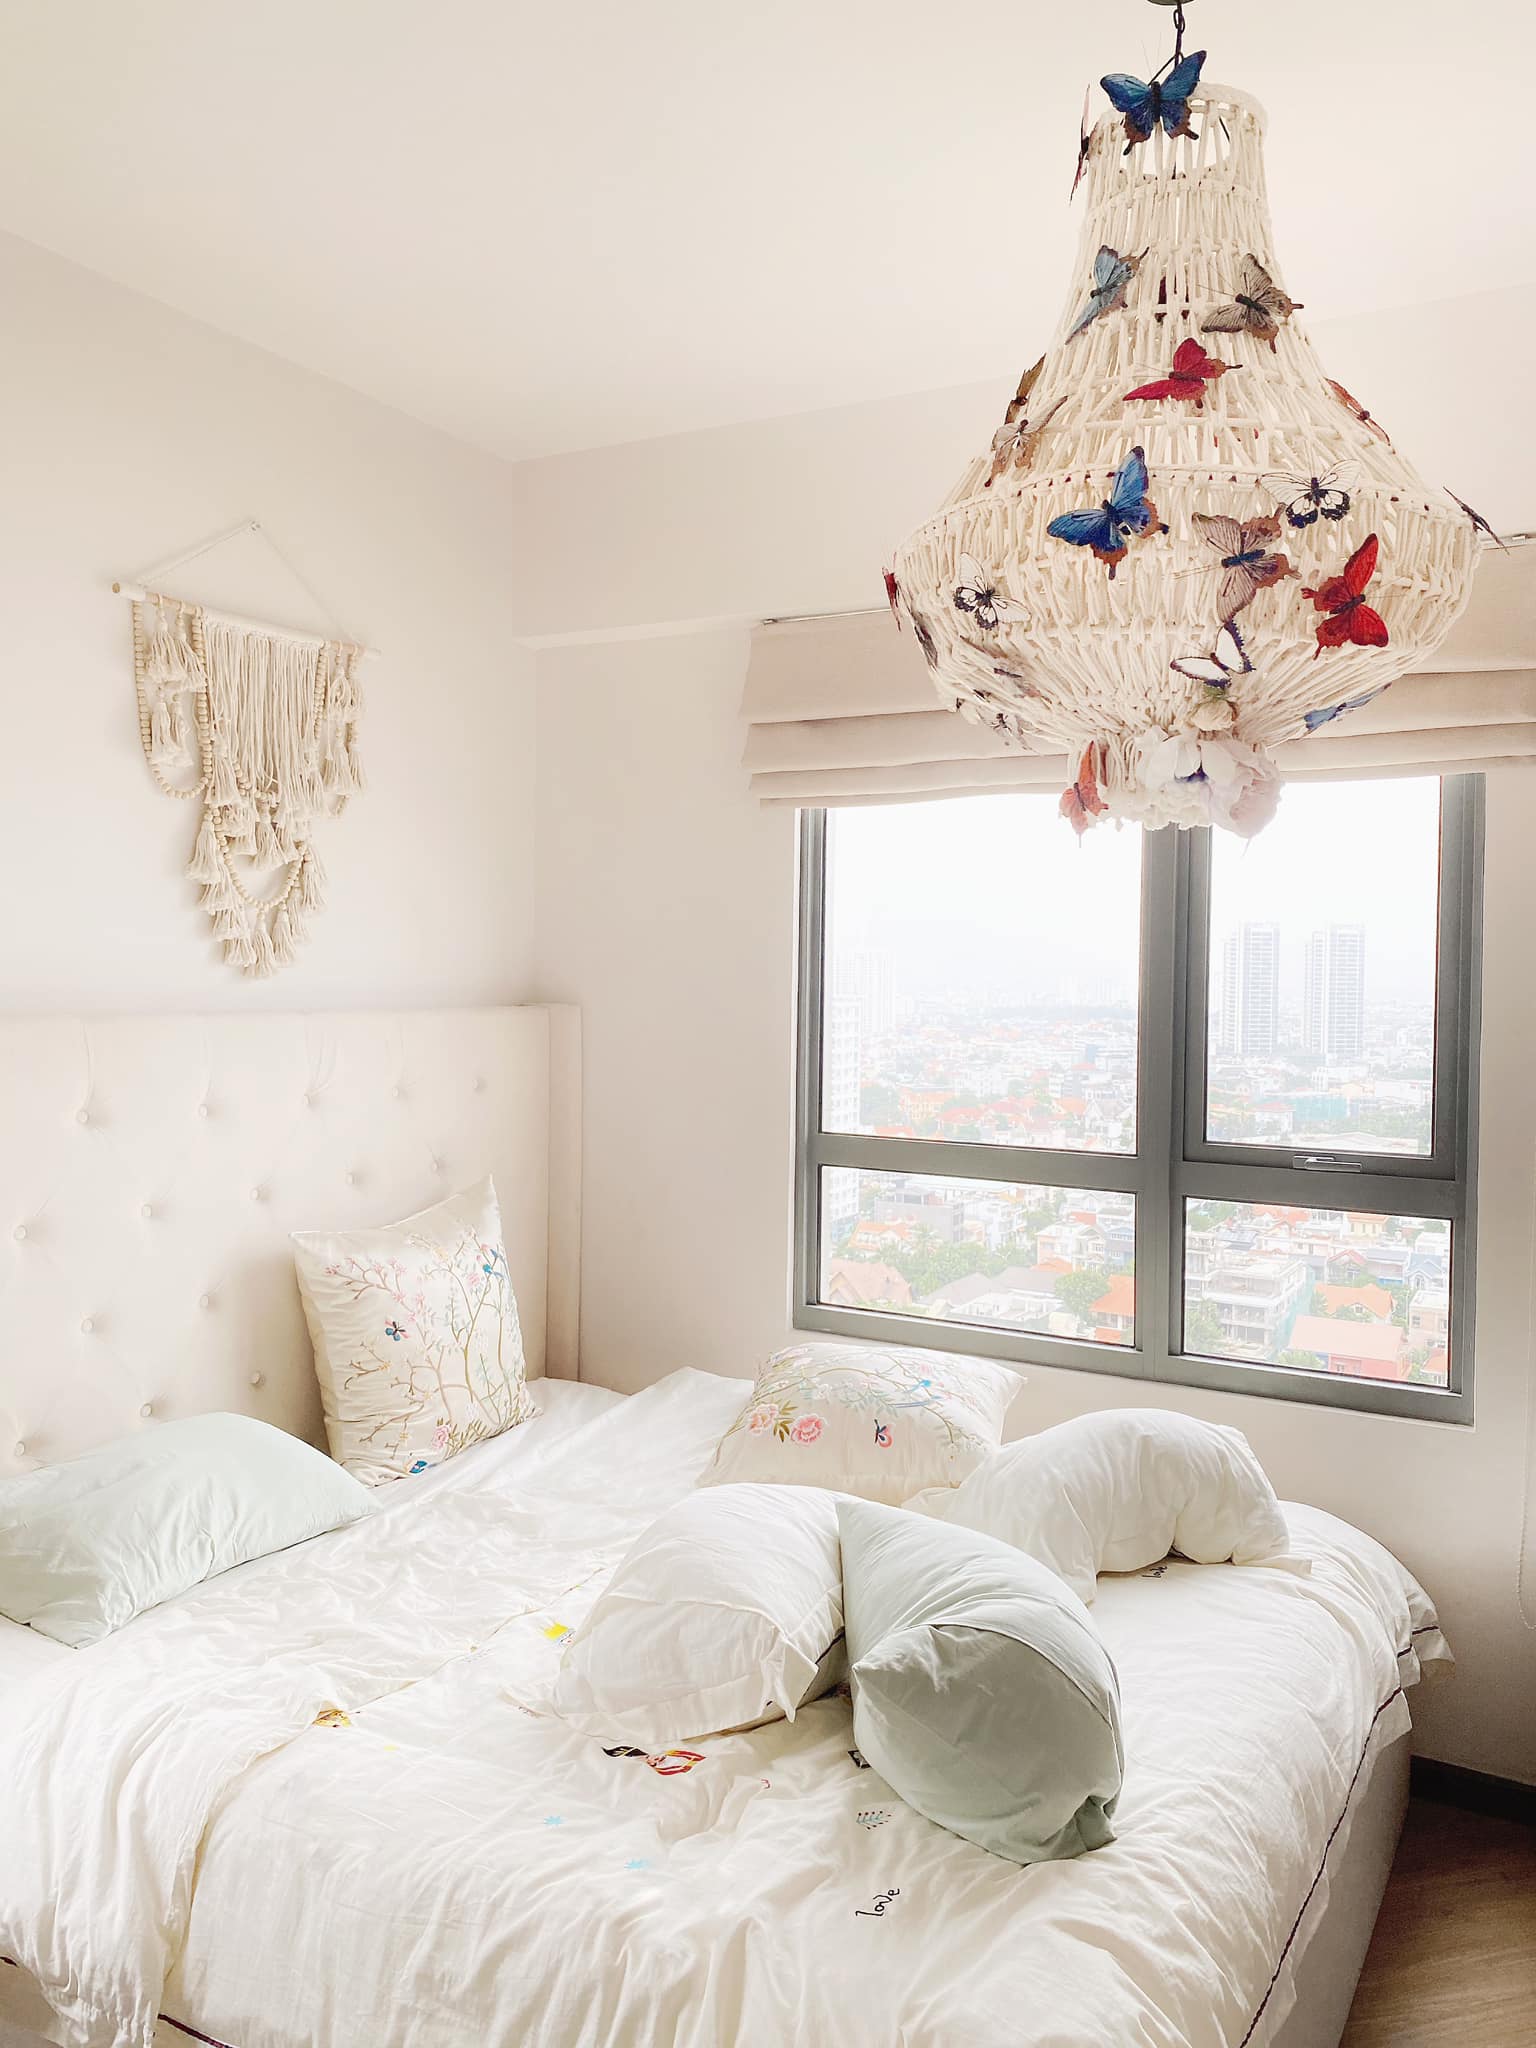 Phòng ngủ với tông màu ấm nhẹ nhàng và những chi tiết trang trí cầu kỳ, thể hiện tư duy thẩm mỹ tinh tế của chủ nhân.